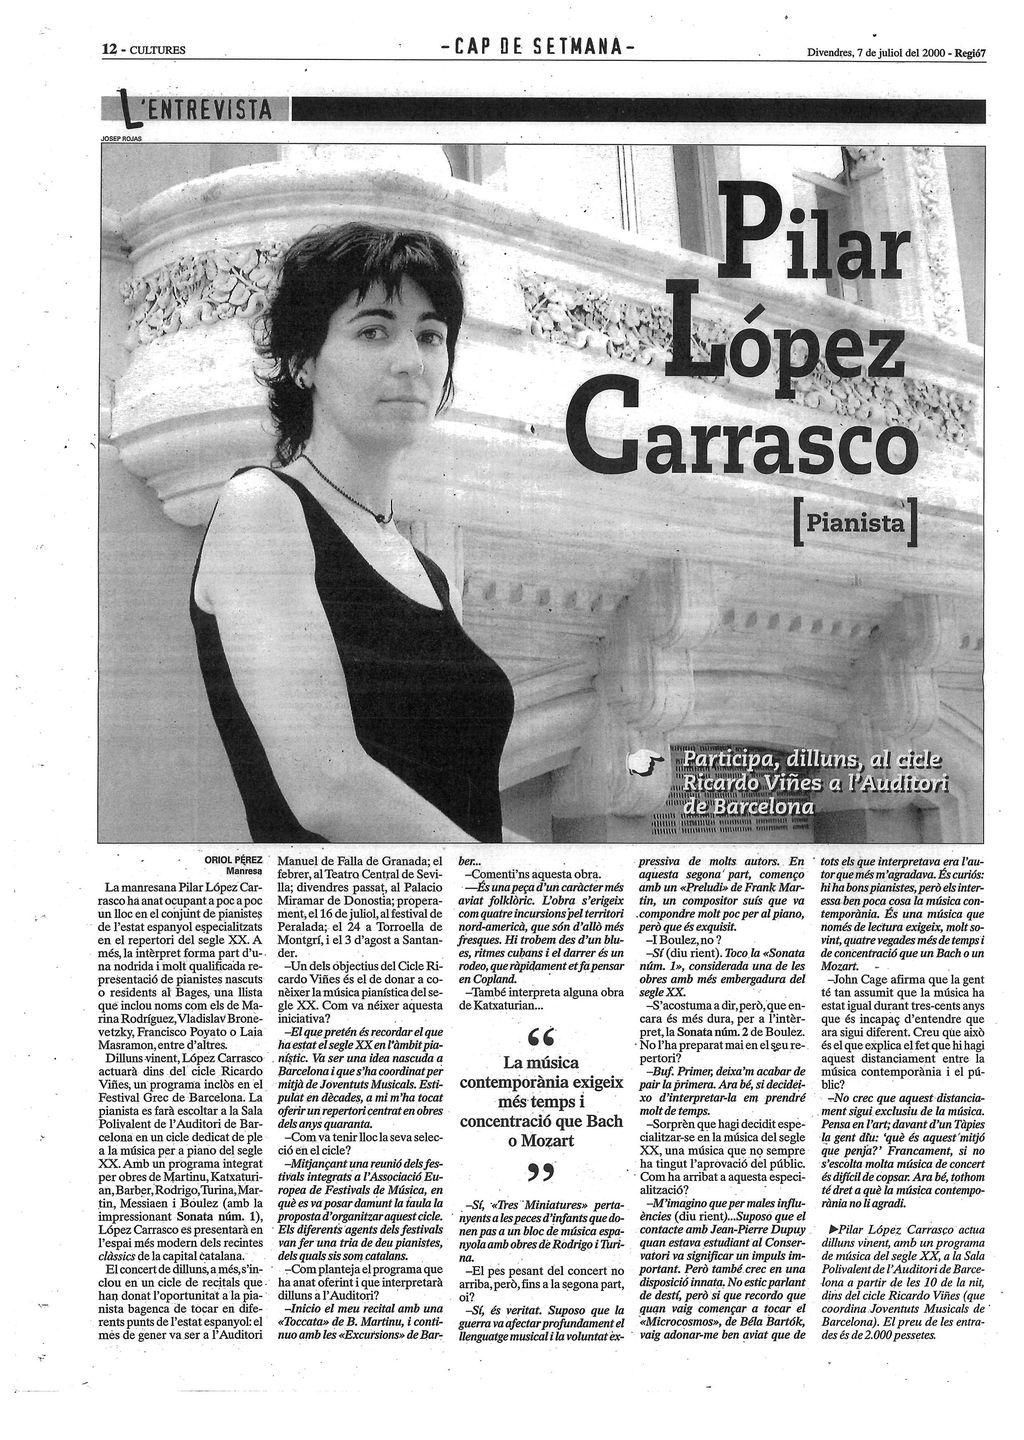 REGIÓ 7. Entrevista. 7 -7- 2000